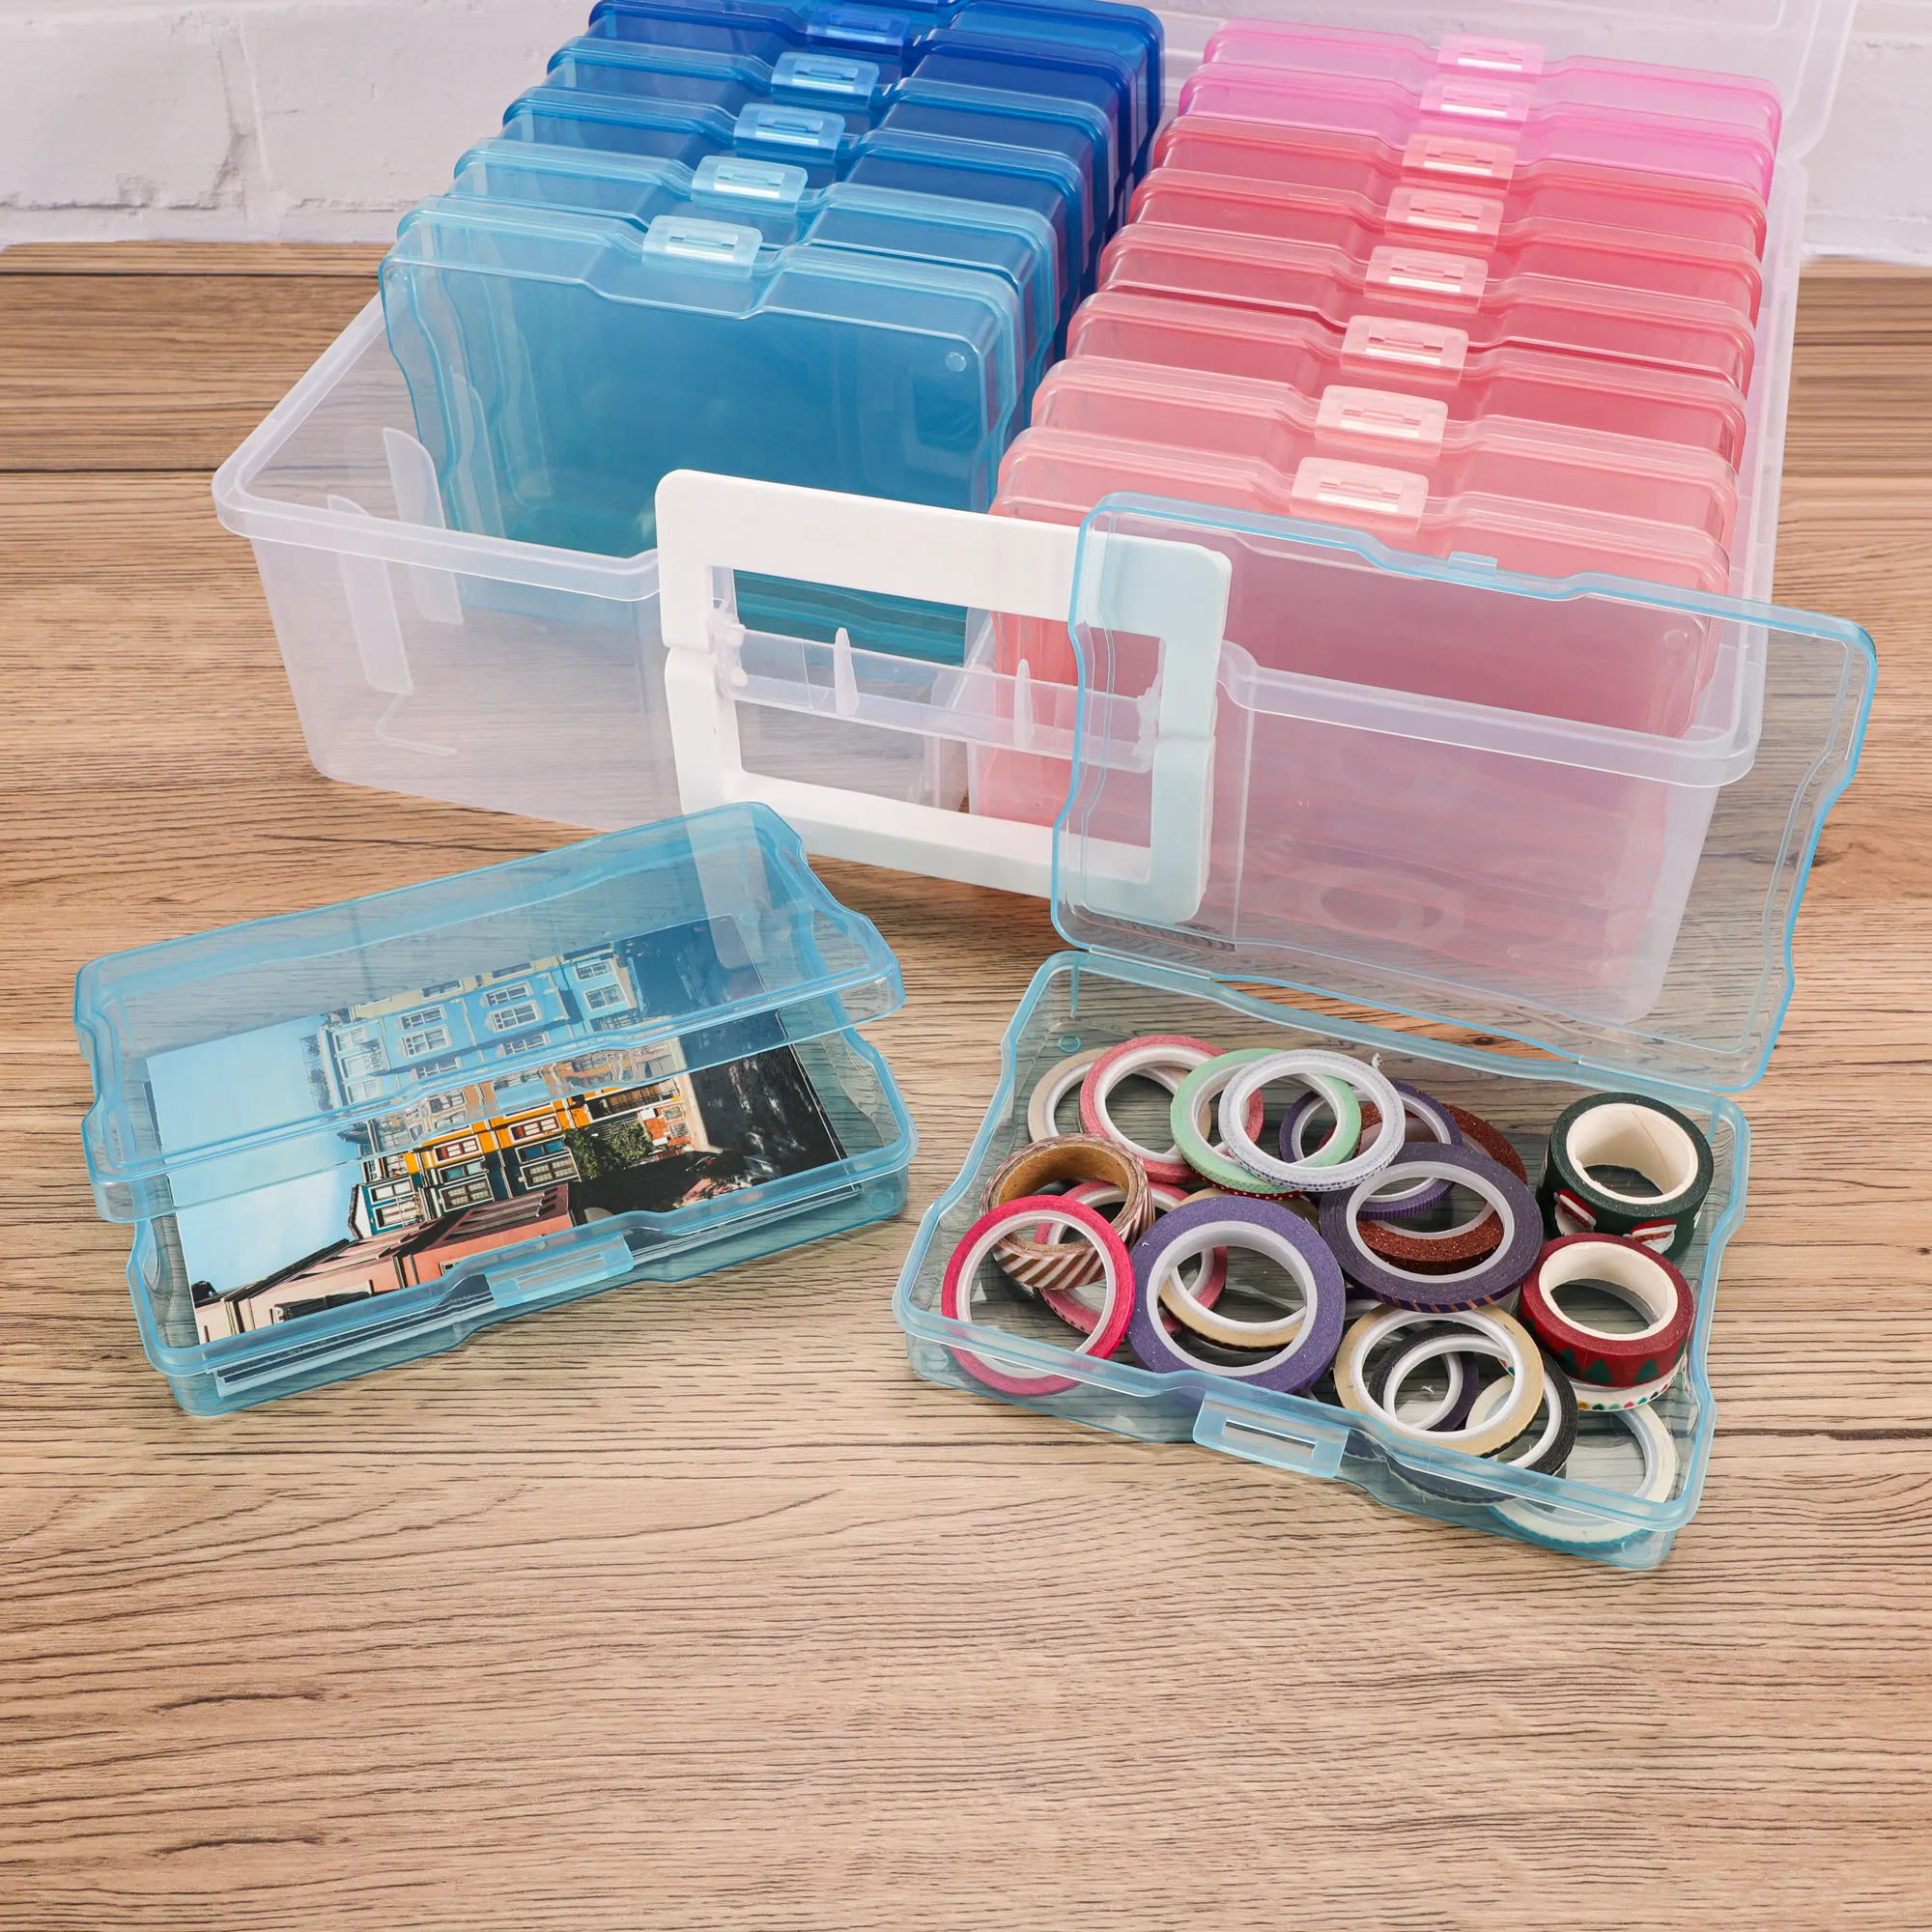 29514 Multifunktionale Aufbewahrungsbox aus Kunststoff enthält 16 Aufbewahrungsboxen für Fotos, Karten und Stationärmaterialien Aufbewahrung